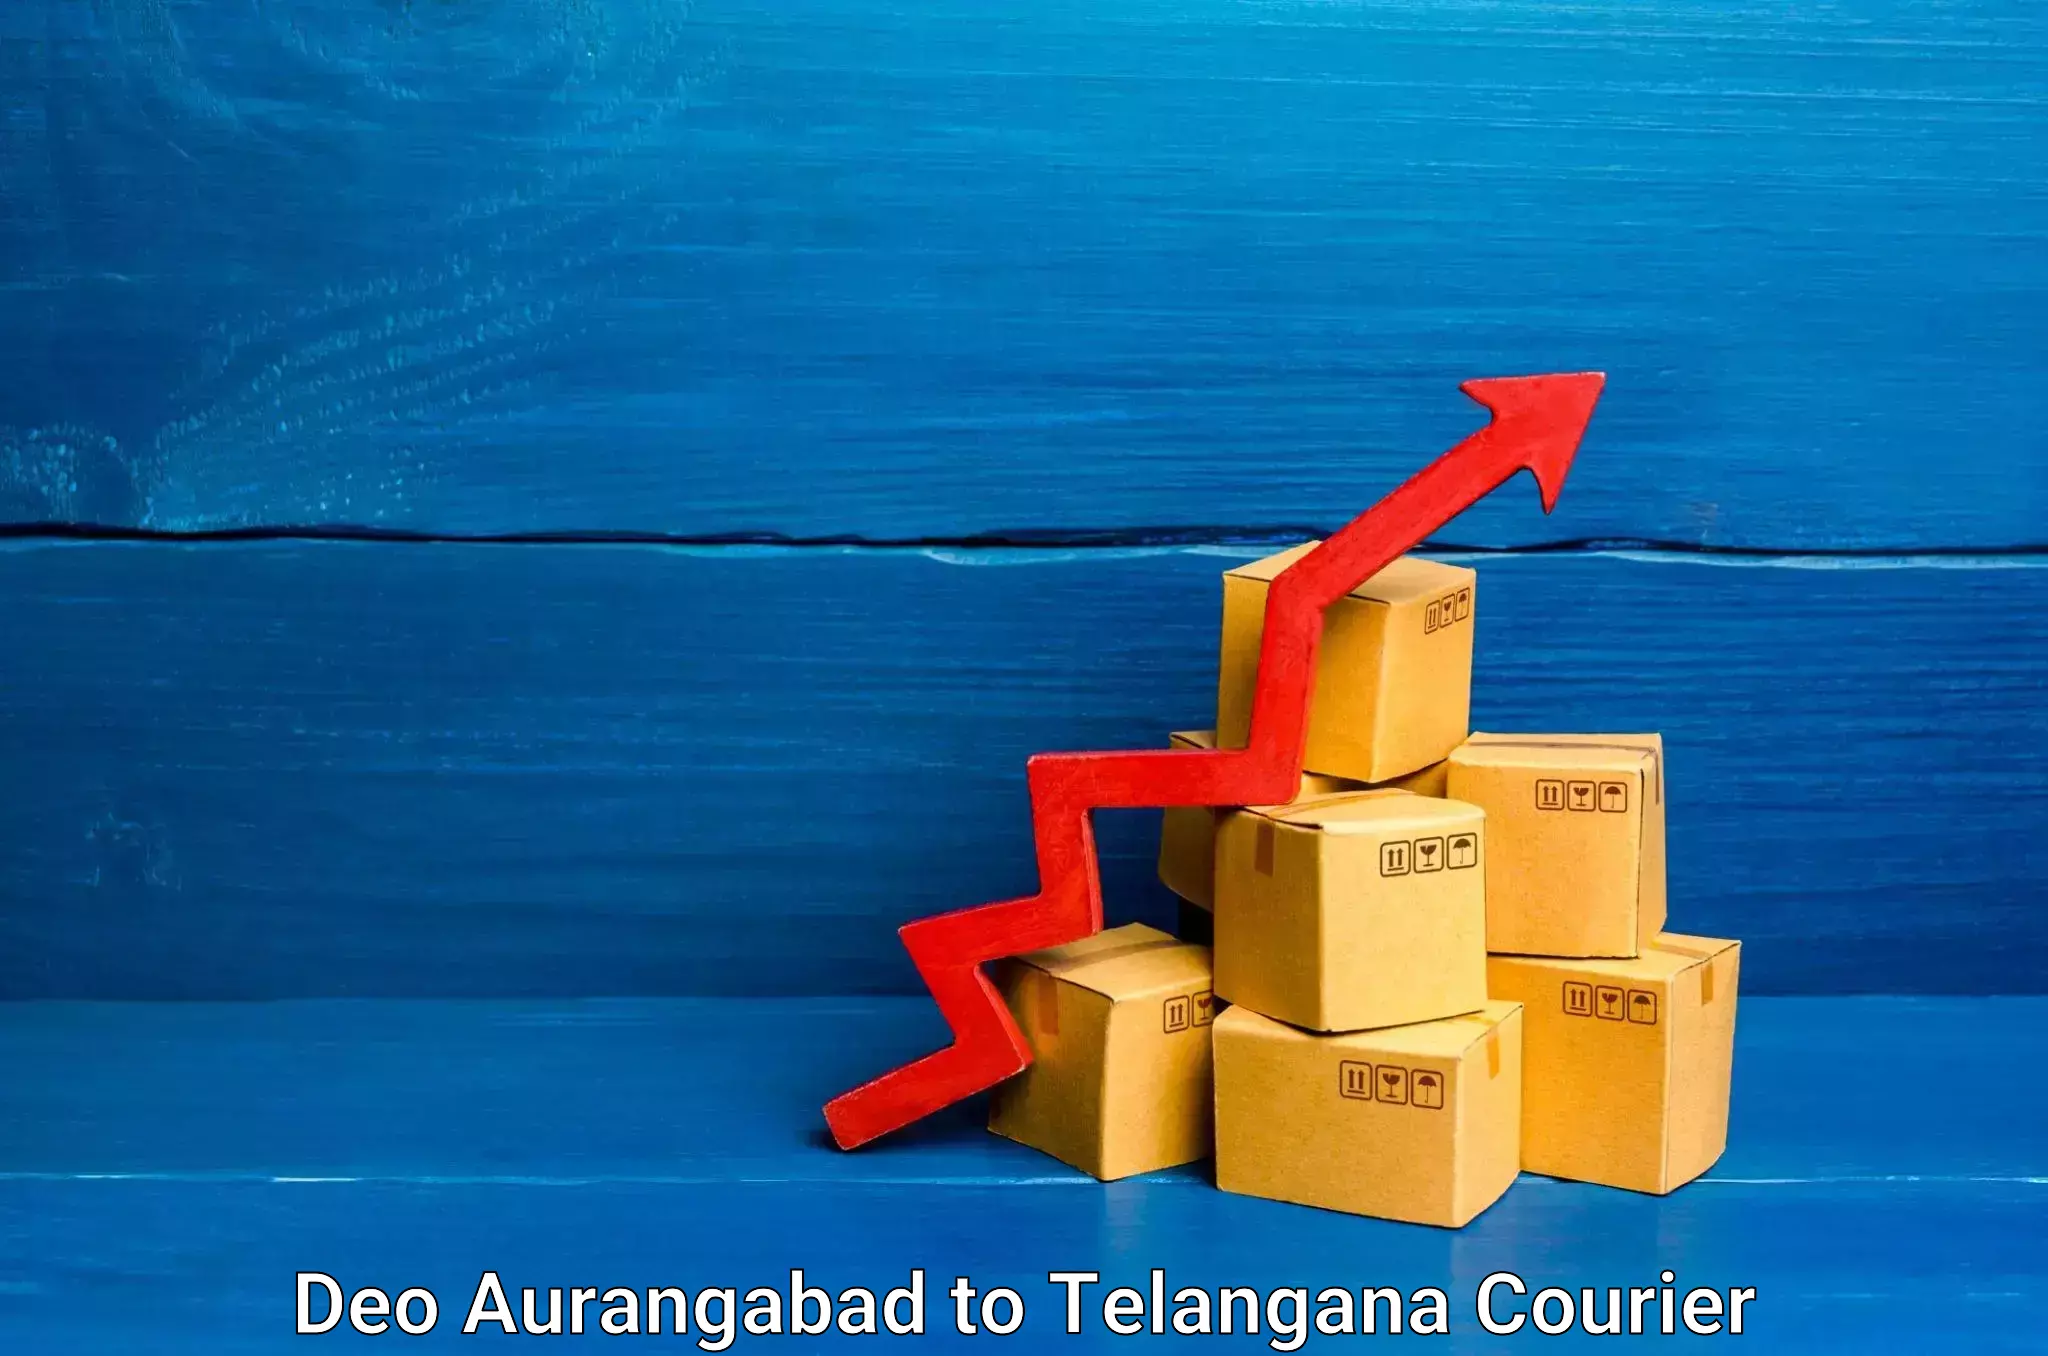 Door-to-door relocation services in Deo Aurangabad to Telangana